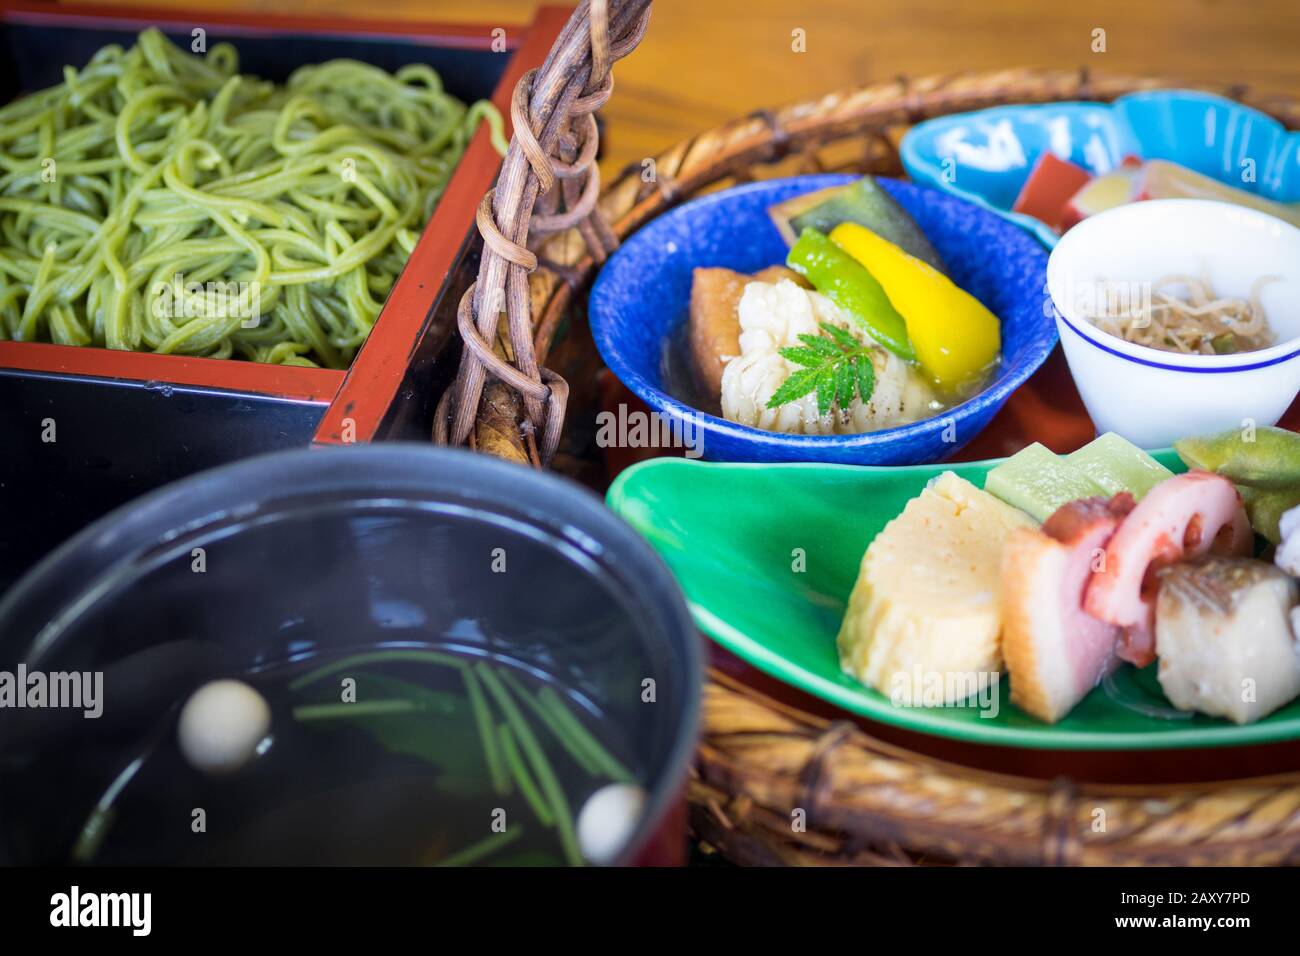 Un déjeuner kaiseki décontracté composé de nouilles soba au thé vert, de soupes, de poissons, de cornichons, de légumes, de tofu et d'autres articles. Restaurant Aiso, Uji, Japon. Banque D'Images